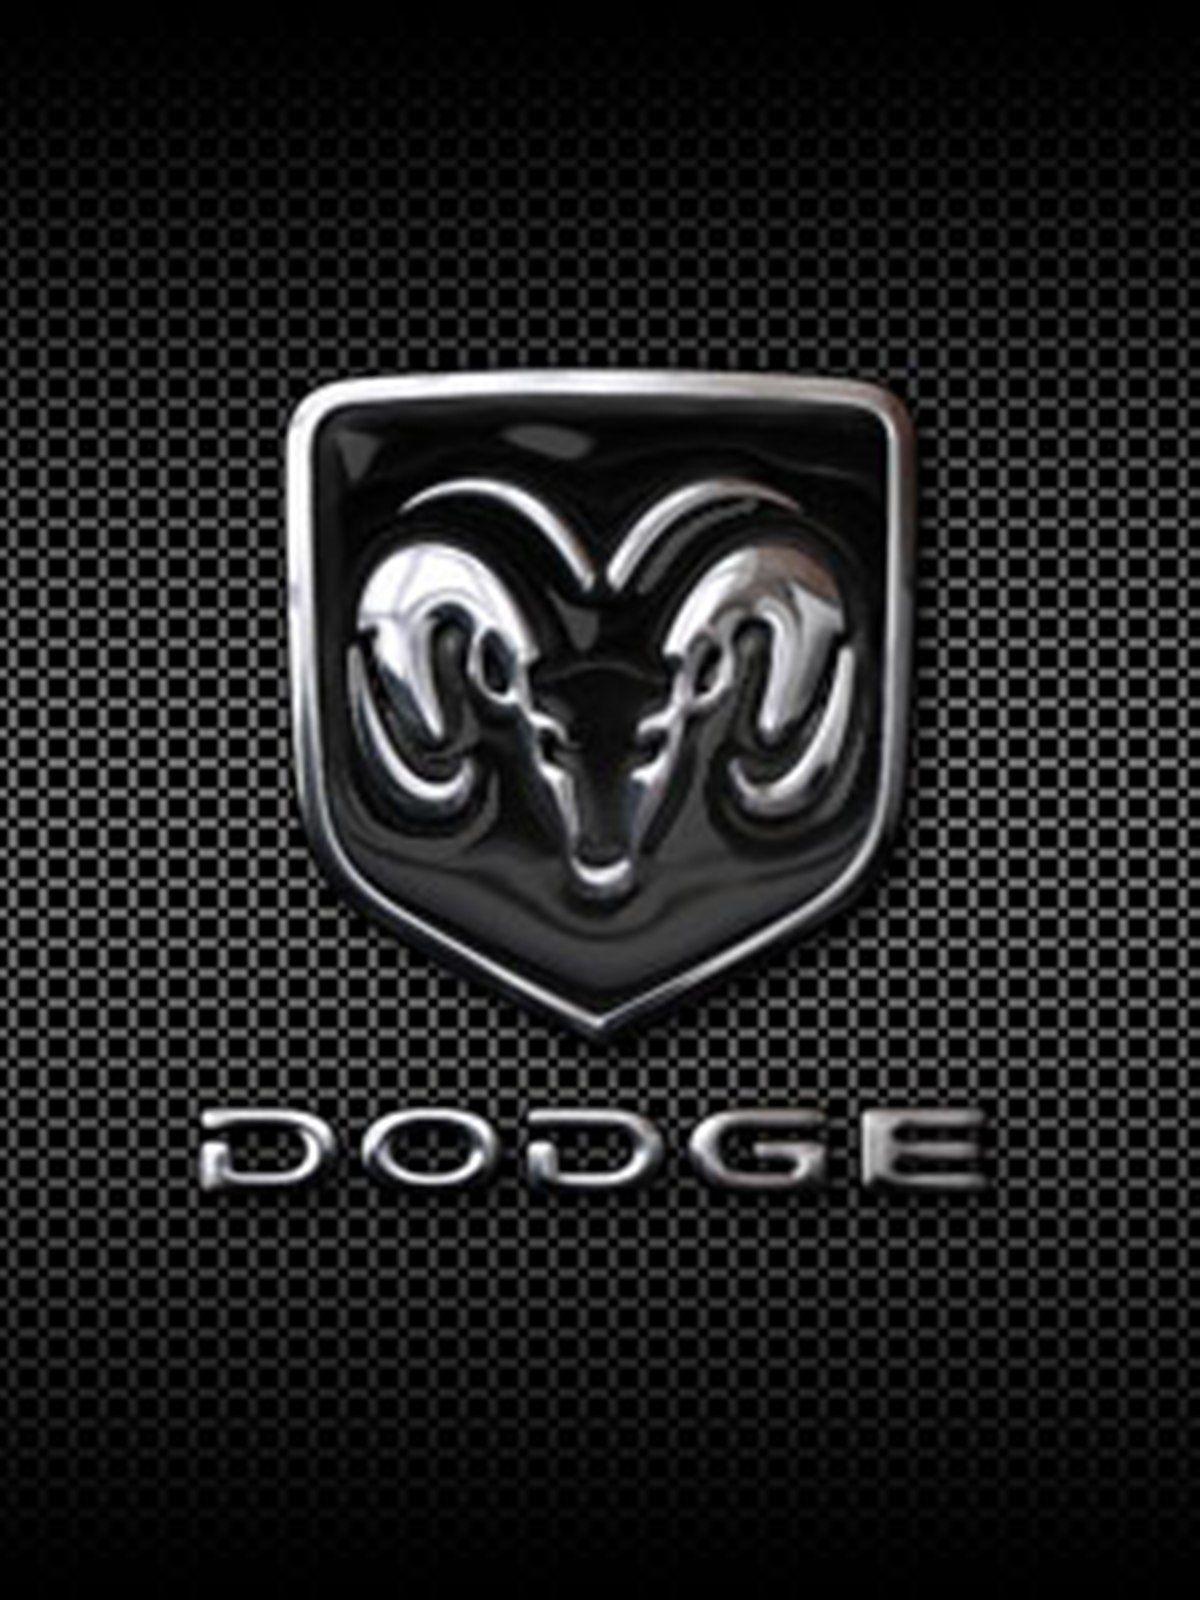 Dodge Logo Phone Wallpaper. Projekty do wypróbowania